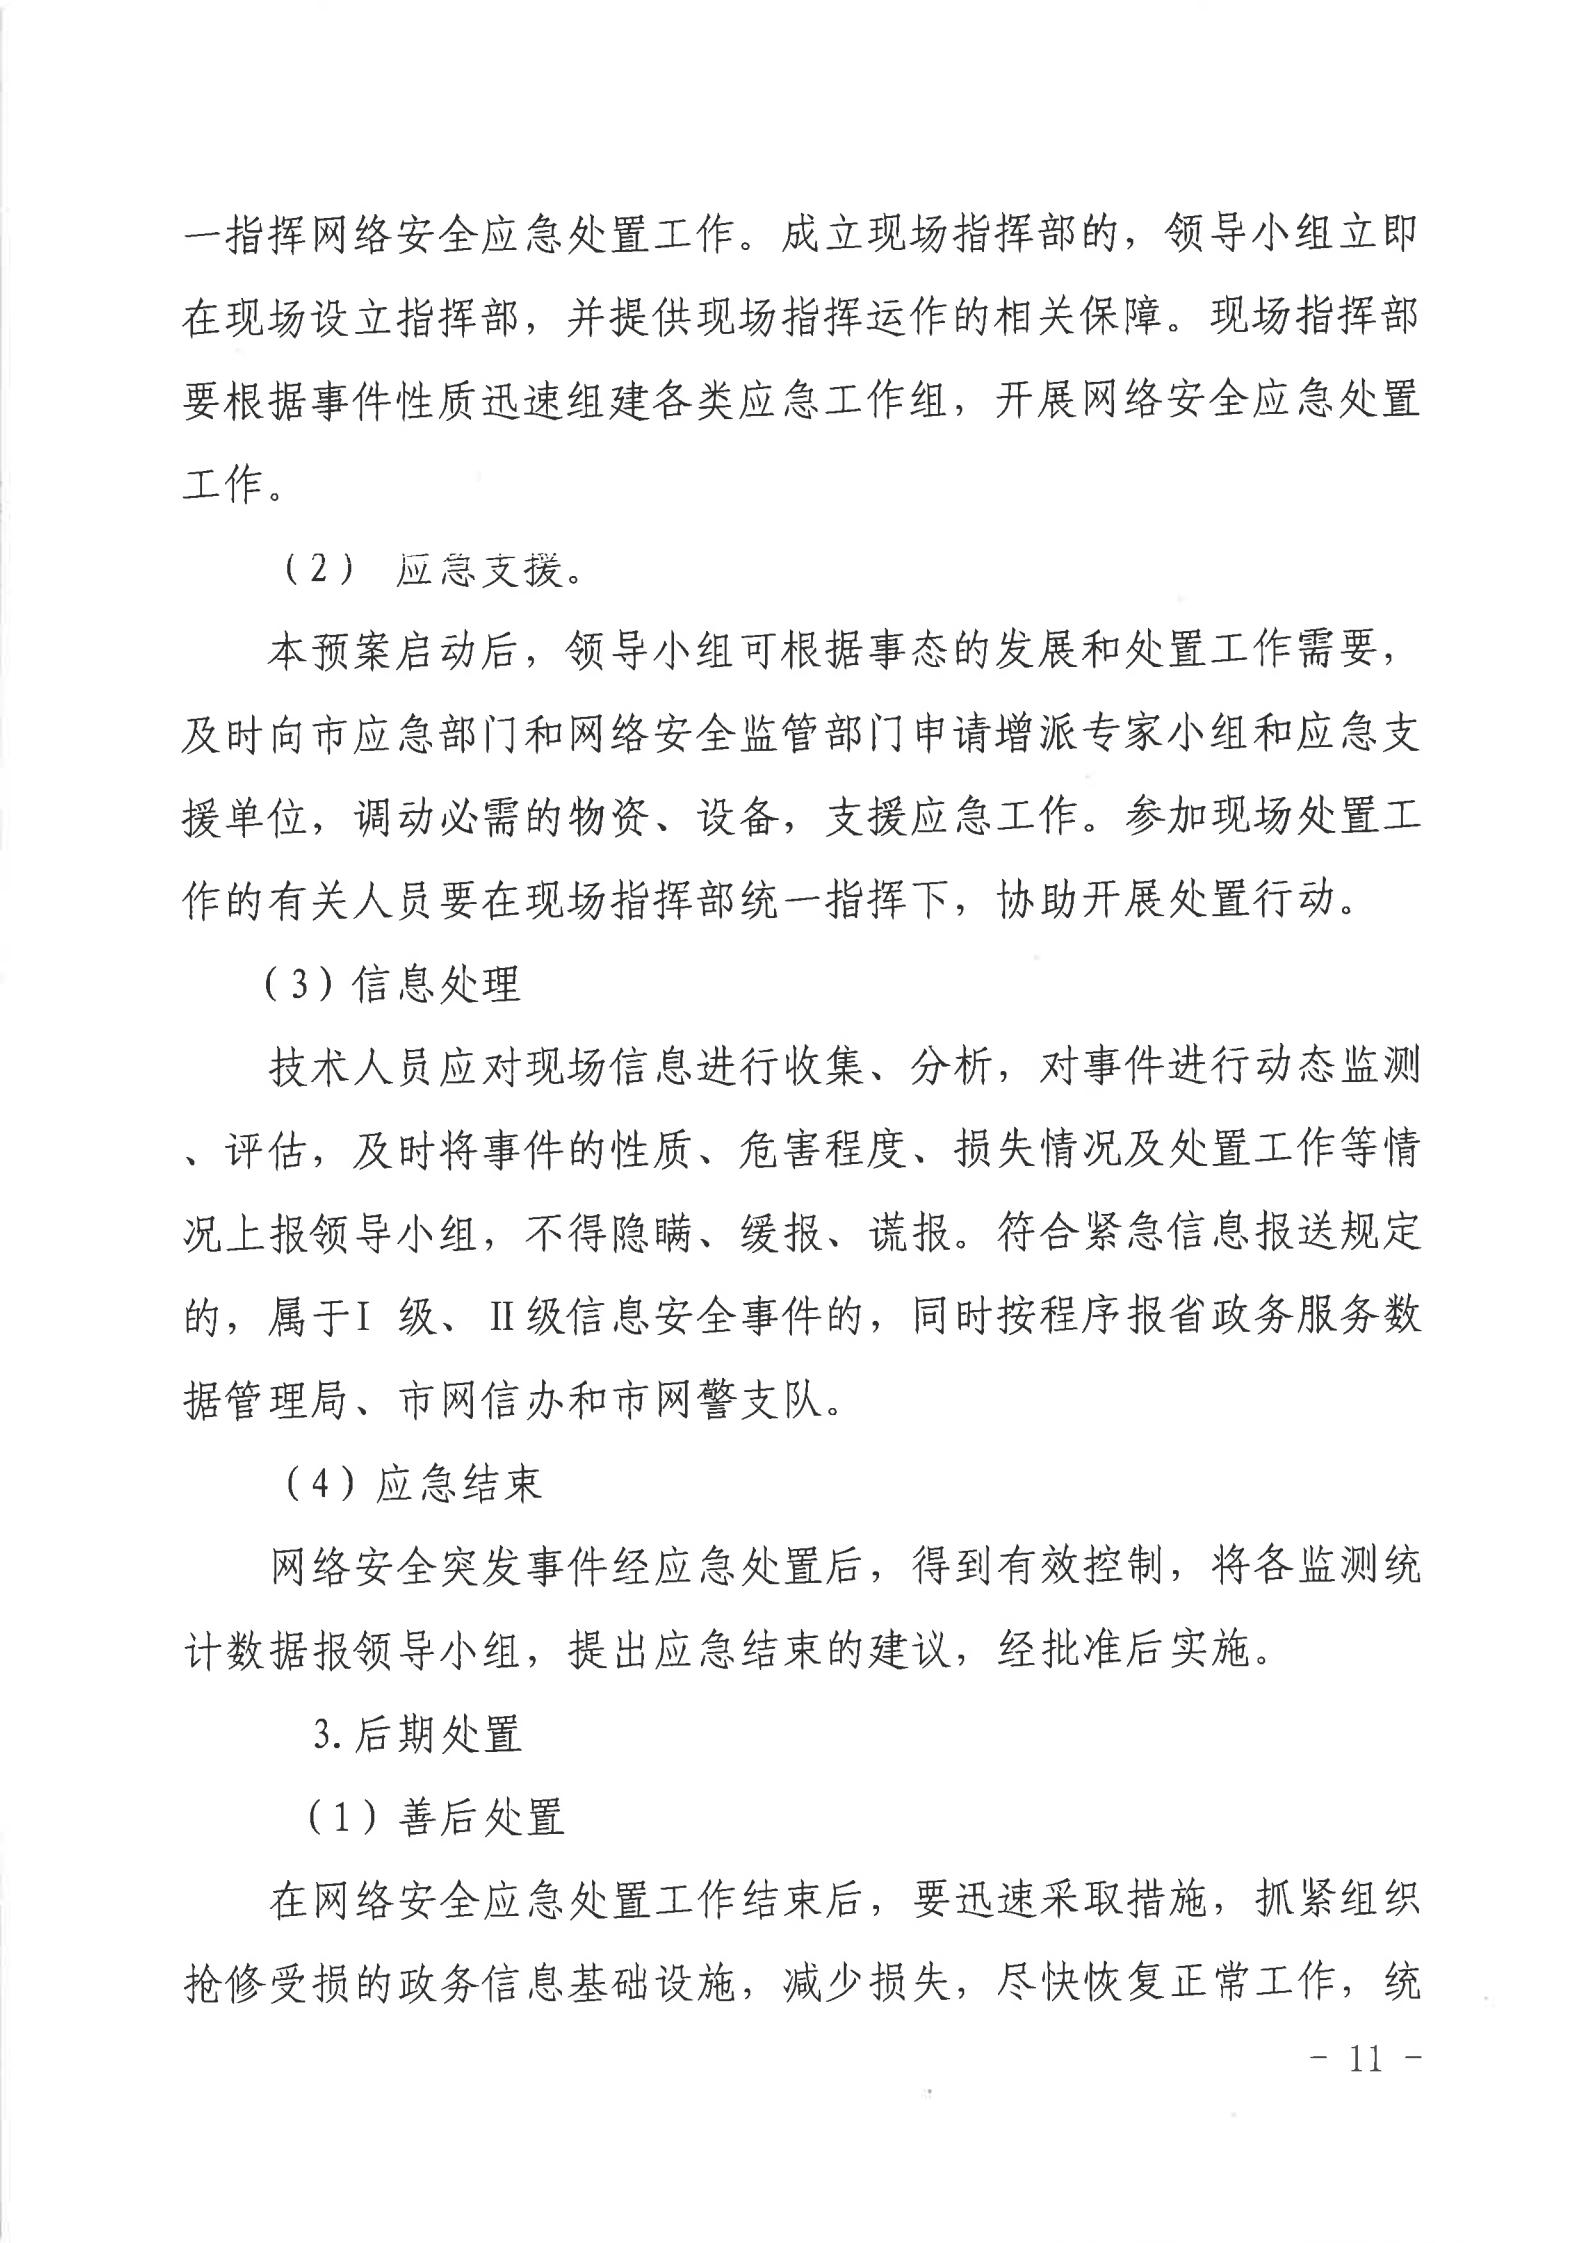 湛江市人民政府行政服务中心网络安全应急预案_10.jpg